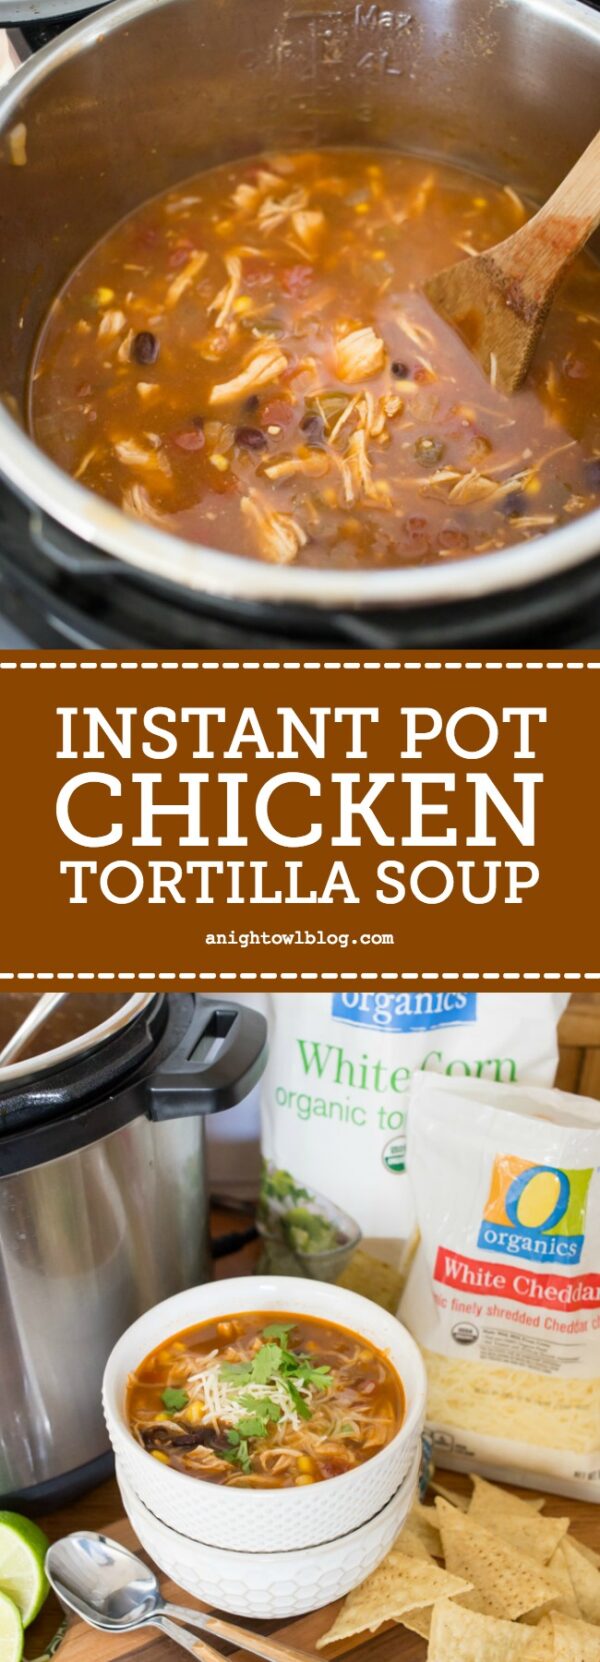 Instant Pot Chicken Tortilla Soup - A Night Owl Blog